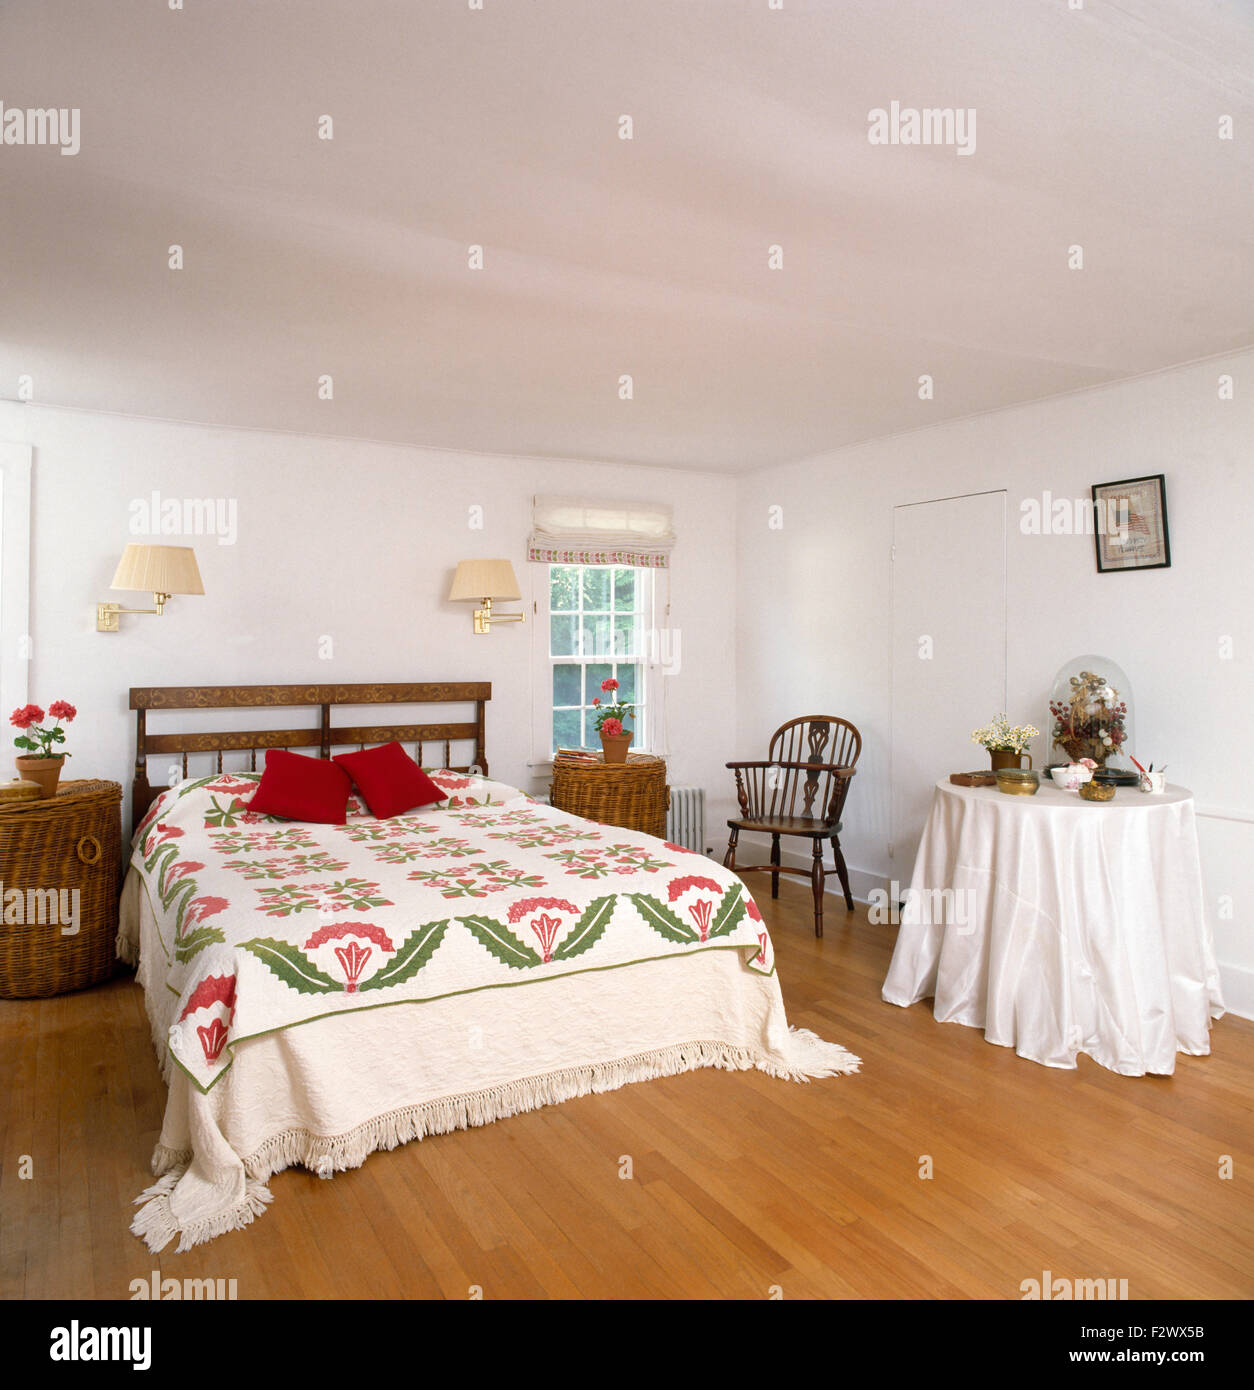 https://c8.alamy.com/compes/f2wx5b/manta-de-cama-en-90-pais-dormitorio-con-pisos-de-madera-y-una-mesa-con-un-pano-blanco-f2wx5b.jpg